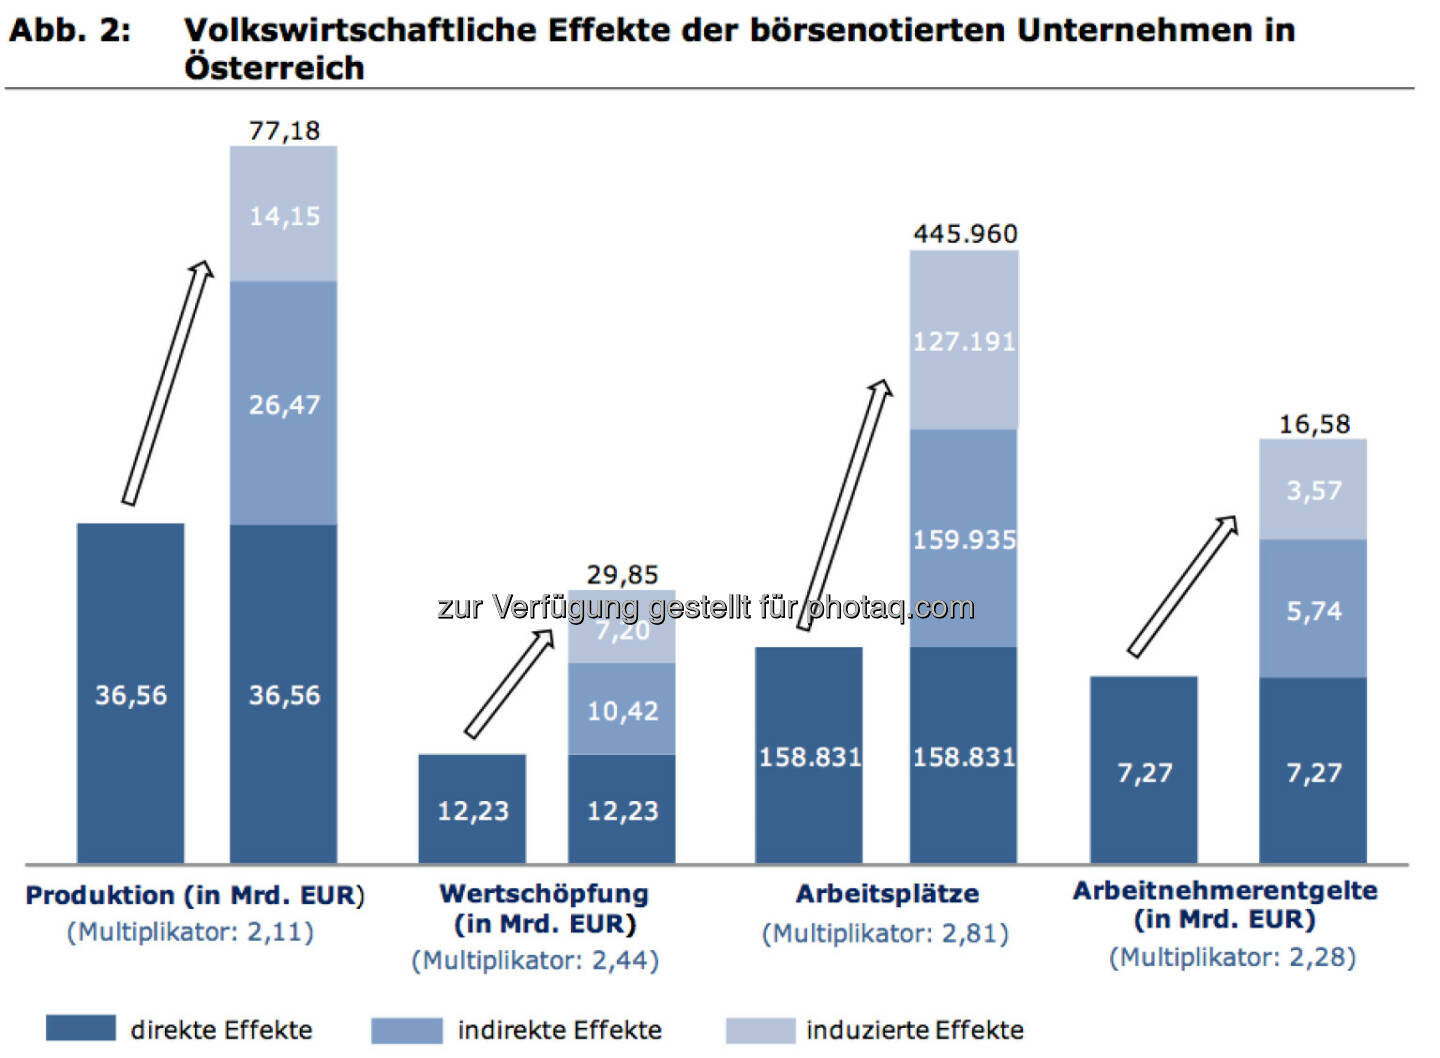 Volkswirtschaftliche Effekte der börsenotierten Unternehmen in Österreich